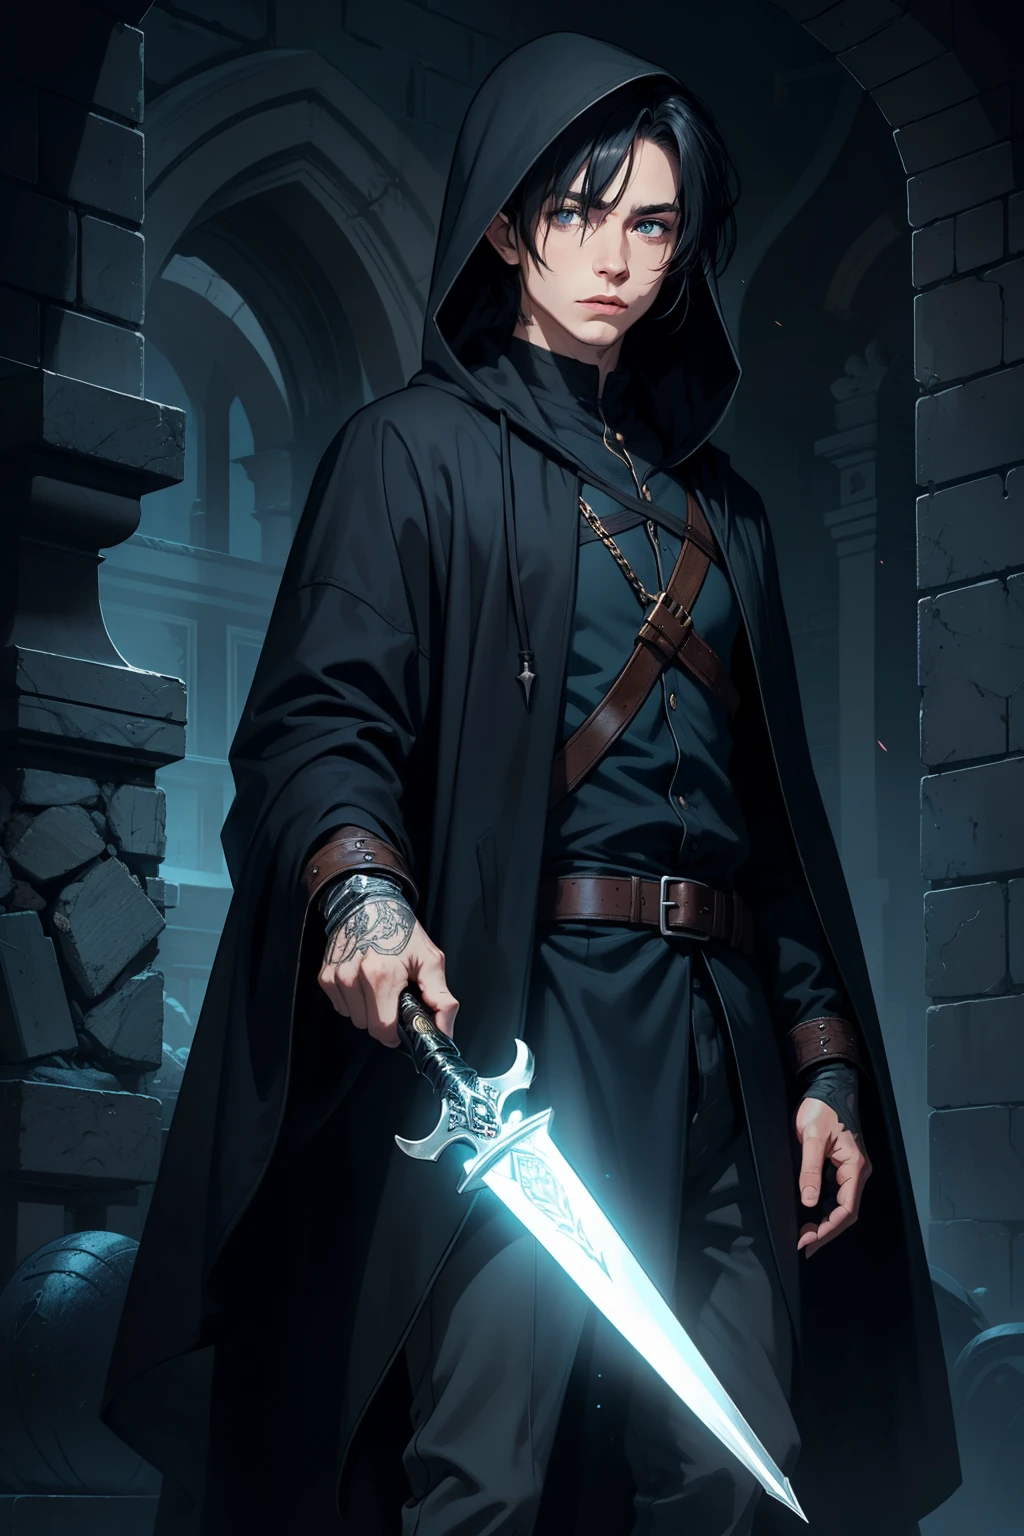 男性 神秘的なエルフ 暗殺者 神秘的なトリックスター ならず者 黒いローブ フード付き, 青い目, 短い黒髪, 短剣で, 呪文を唱える